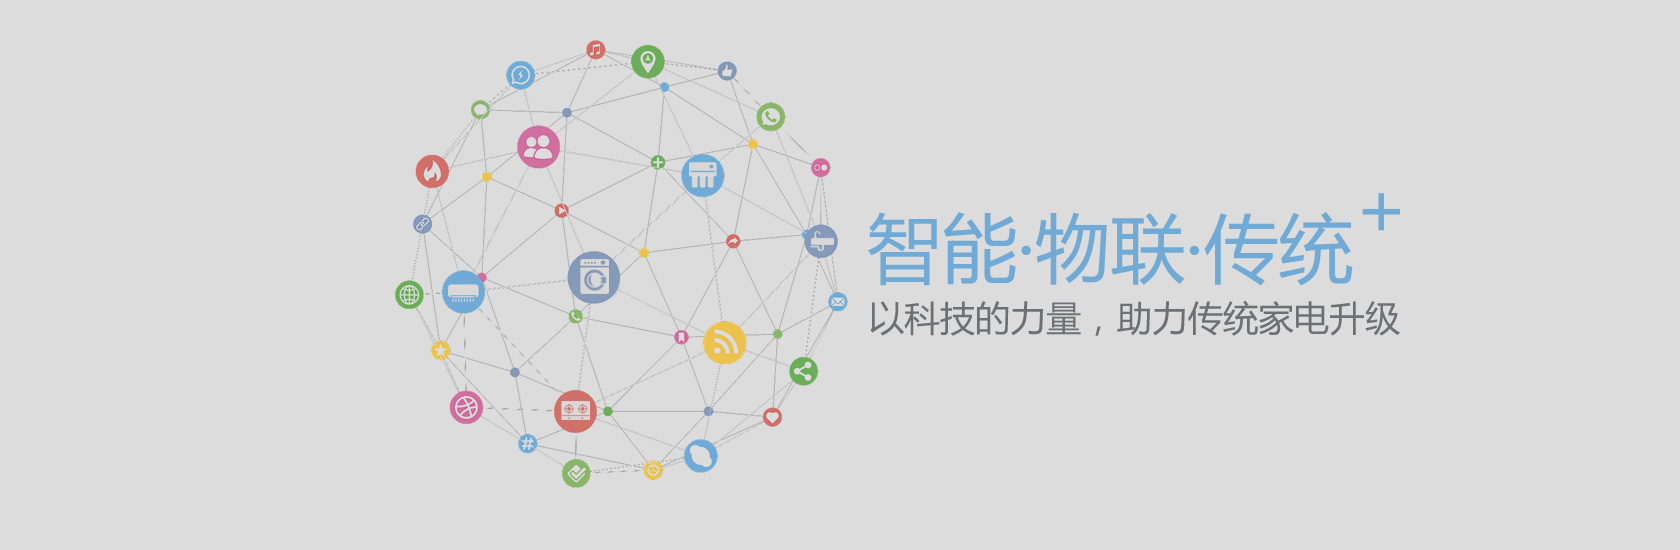 关于当前产品5分彩app下载·(中国)官方网站的成功案例等相关图片